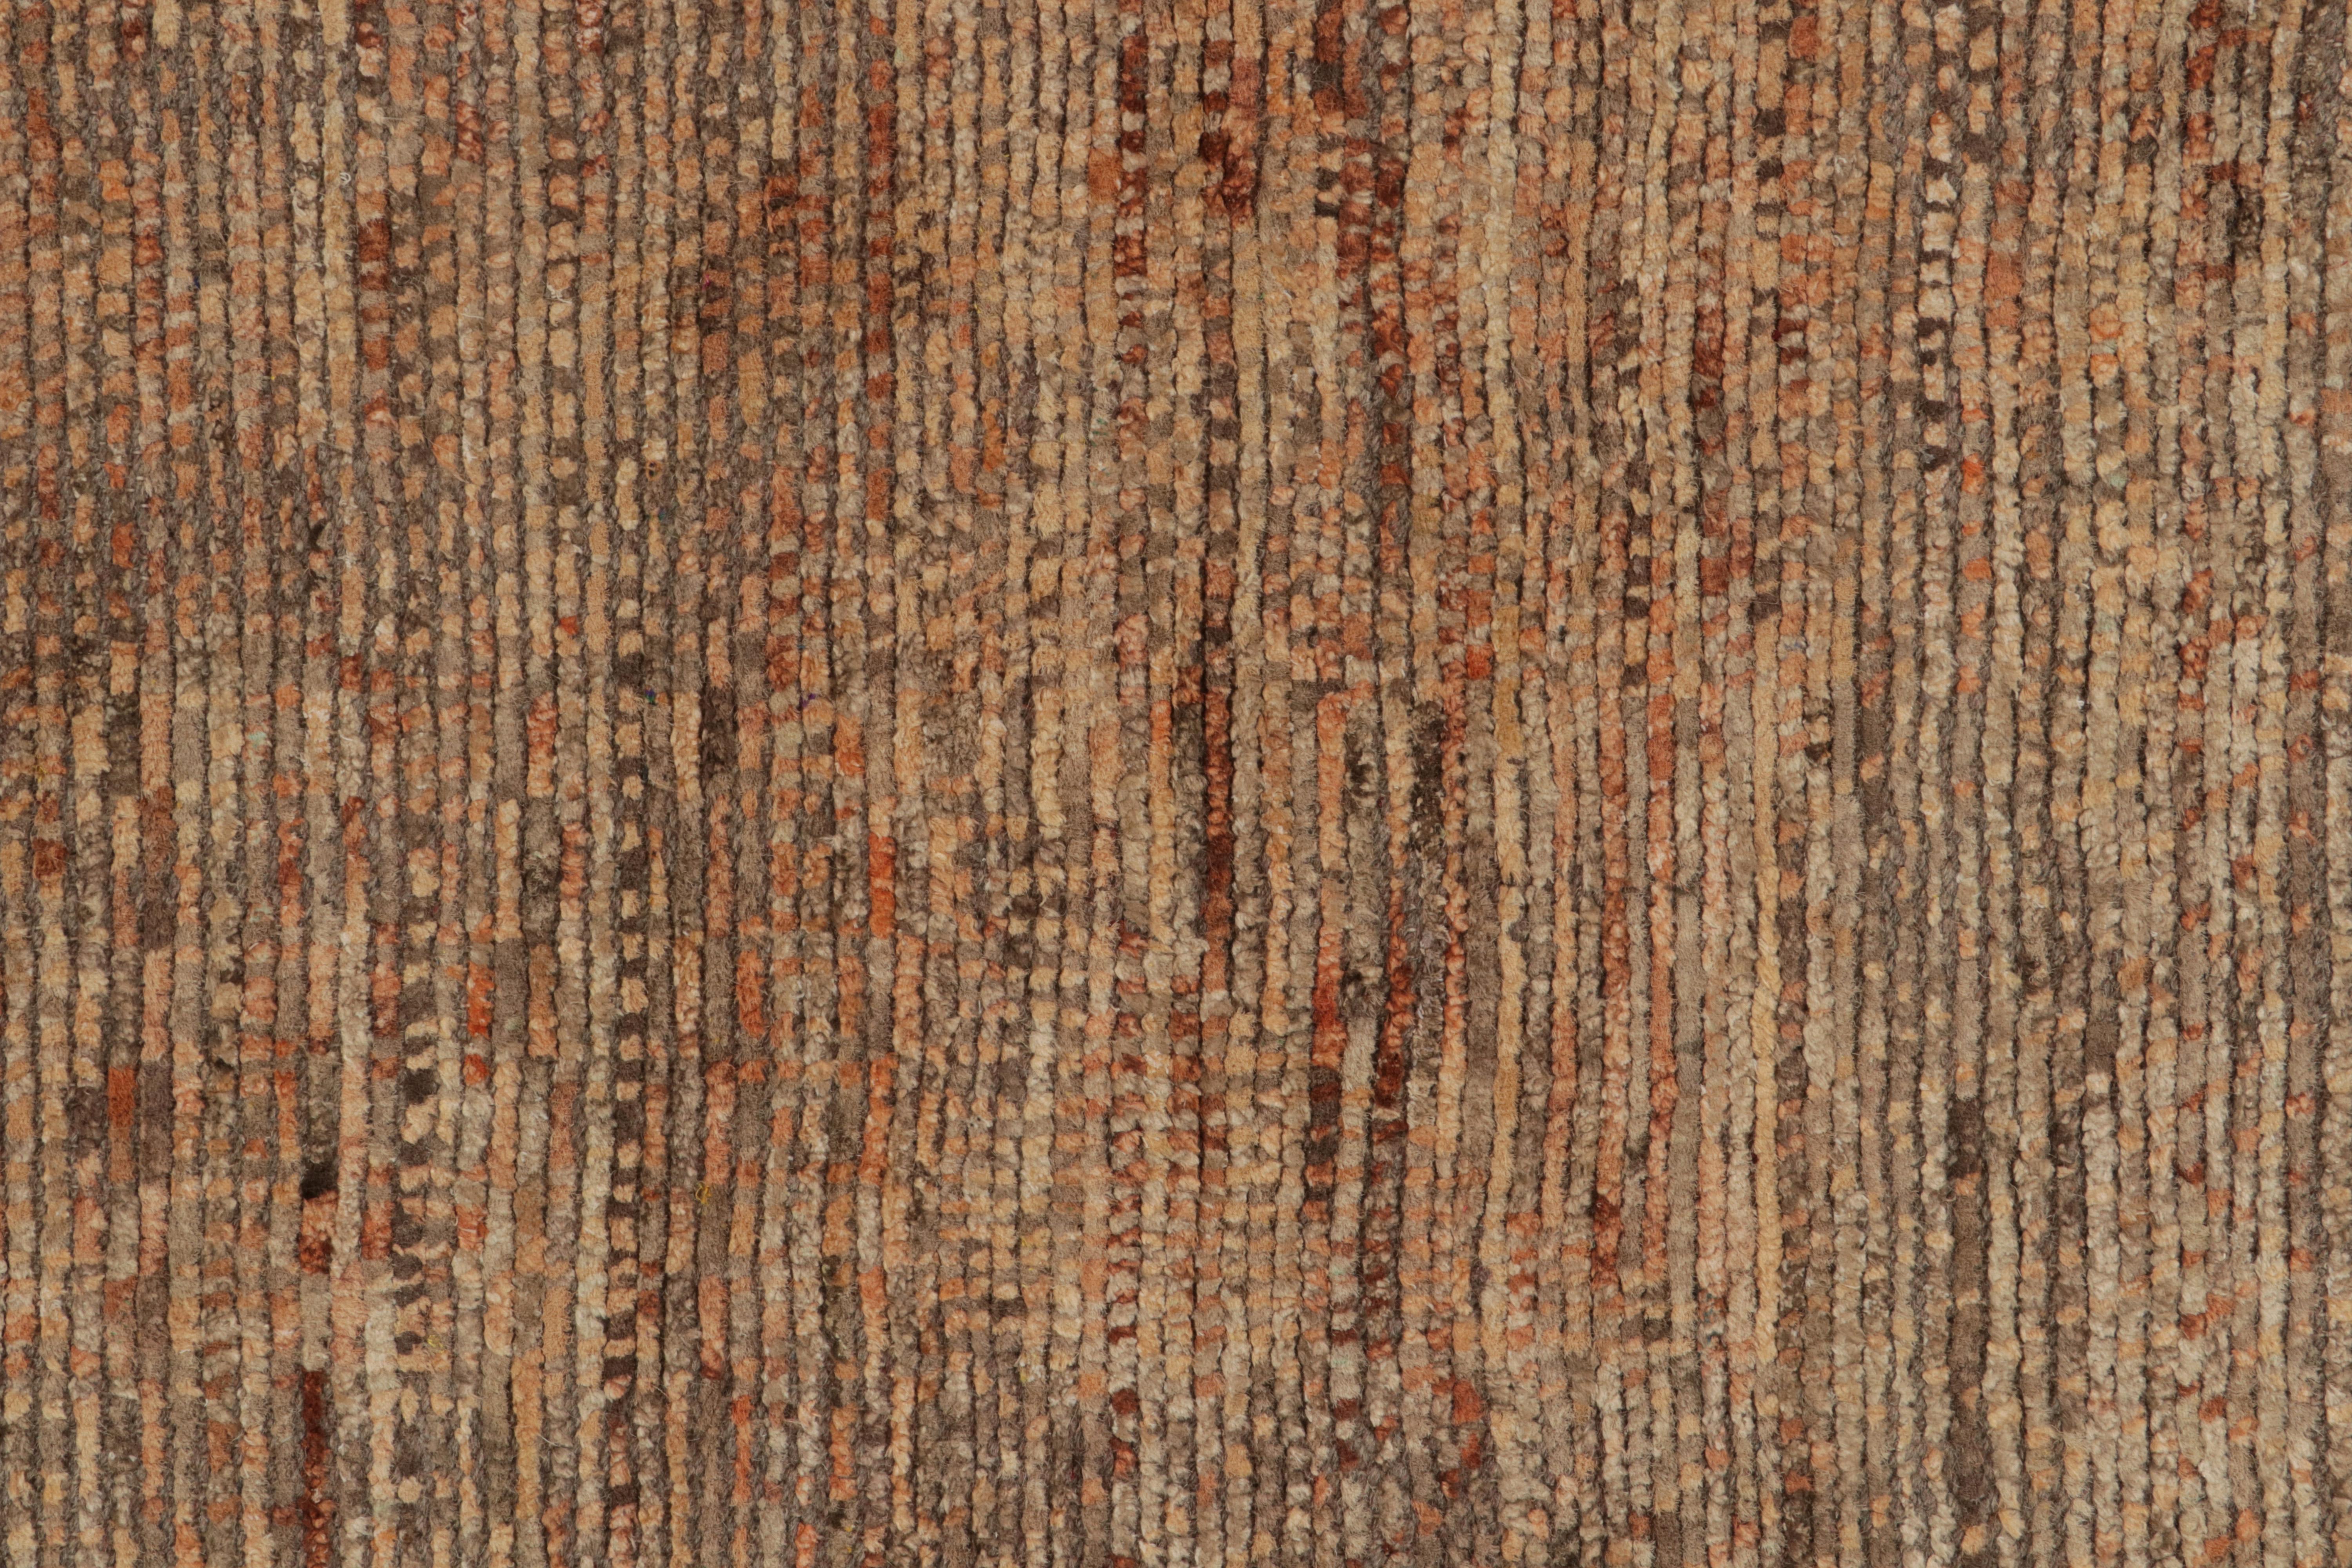 Moderner strukturierter Teppich von Teppich &amp; Kilims mit beige-braunen und orangefarbenen Striae-Mustern